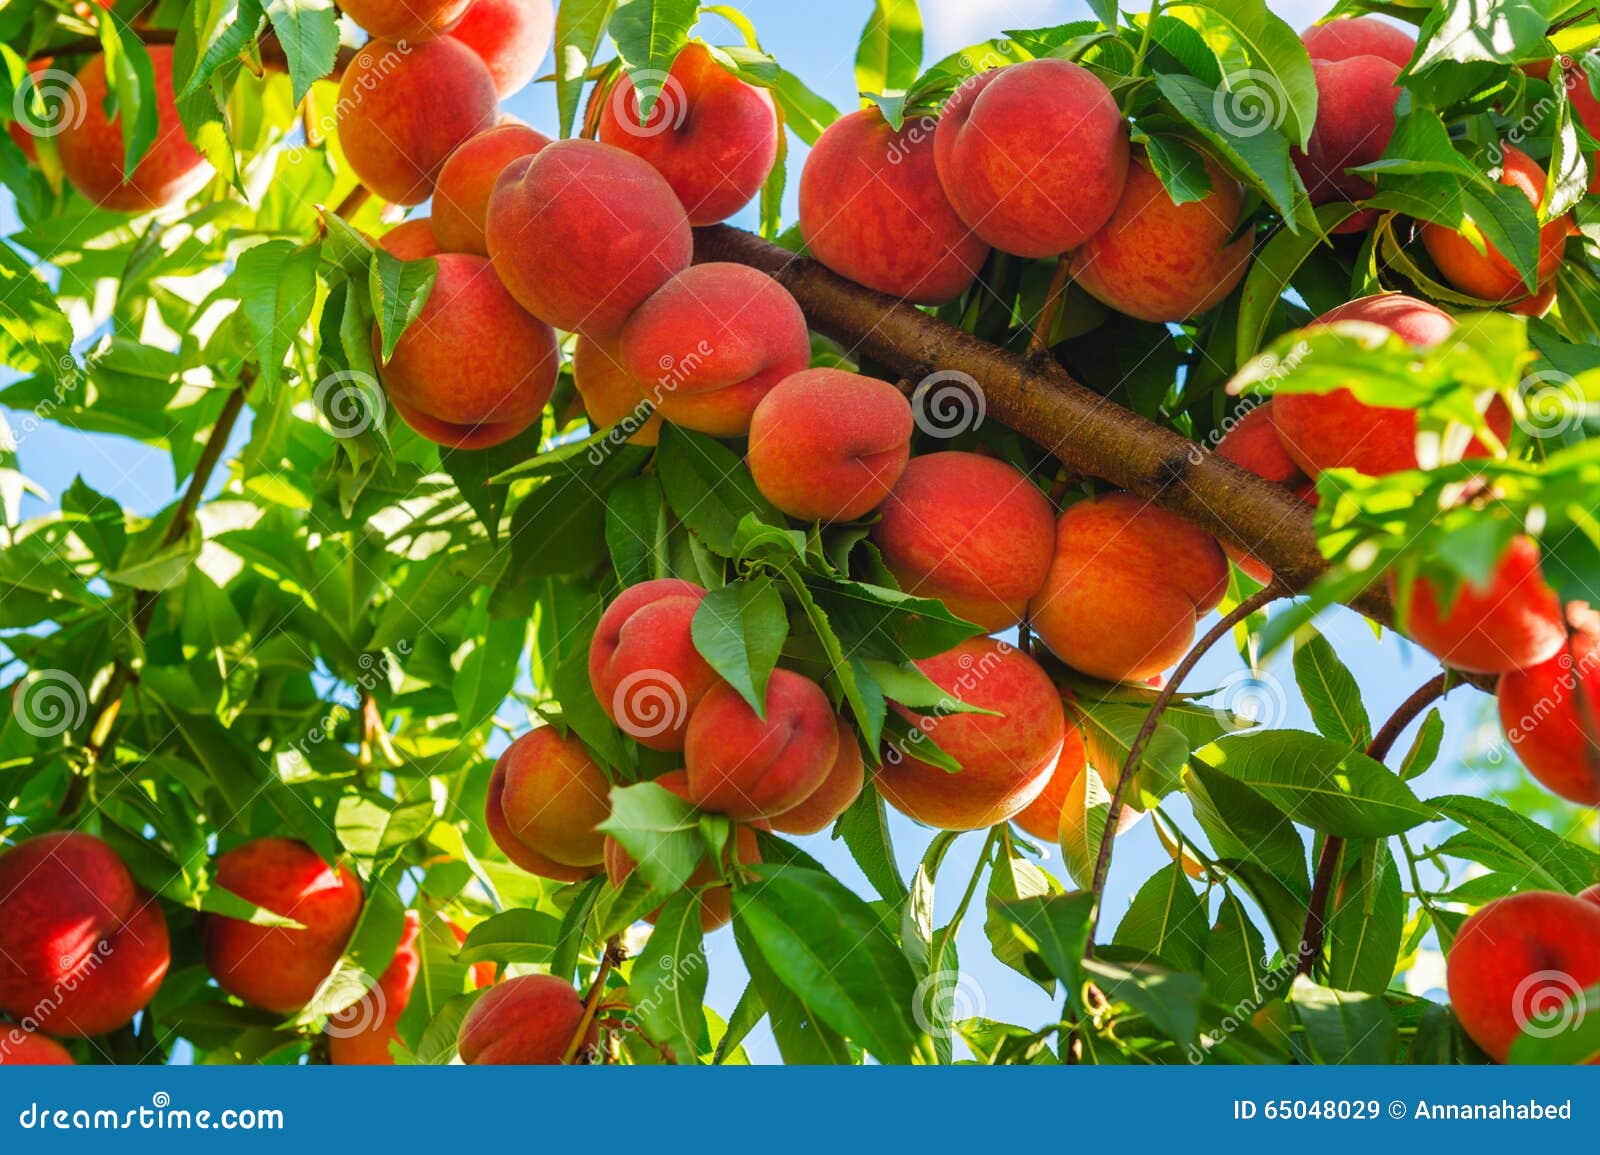 Fruit growing is. Нектарин дерево. Персики в саду. Персиковое дерево в саду. Персиковое дерево с плодами.